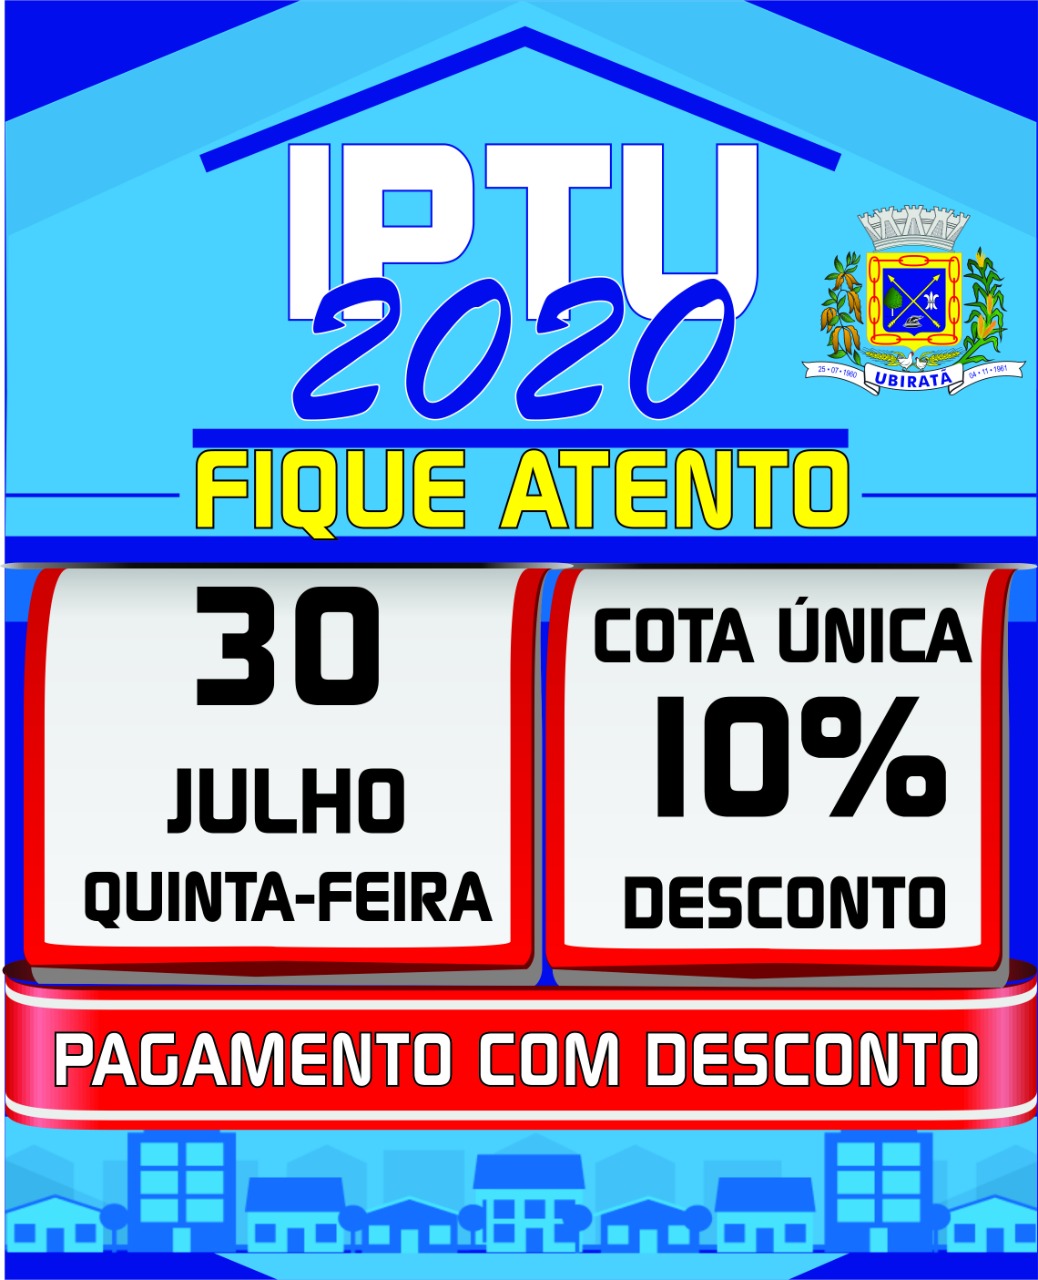 IPTU 2020: prazo para pagamento com 10% de desconto termina no dia 30 de julho (quinta-feira)